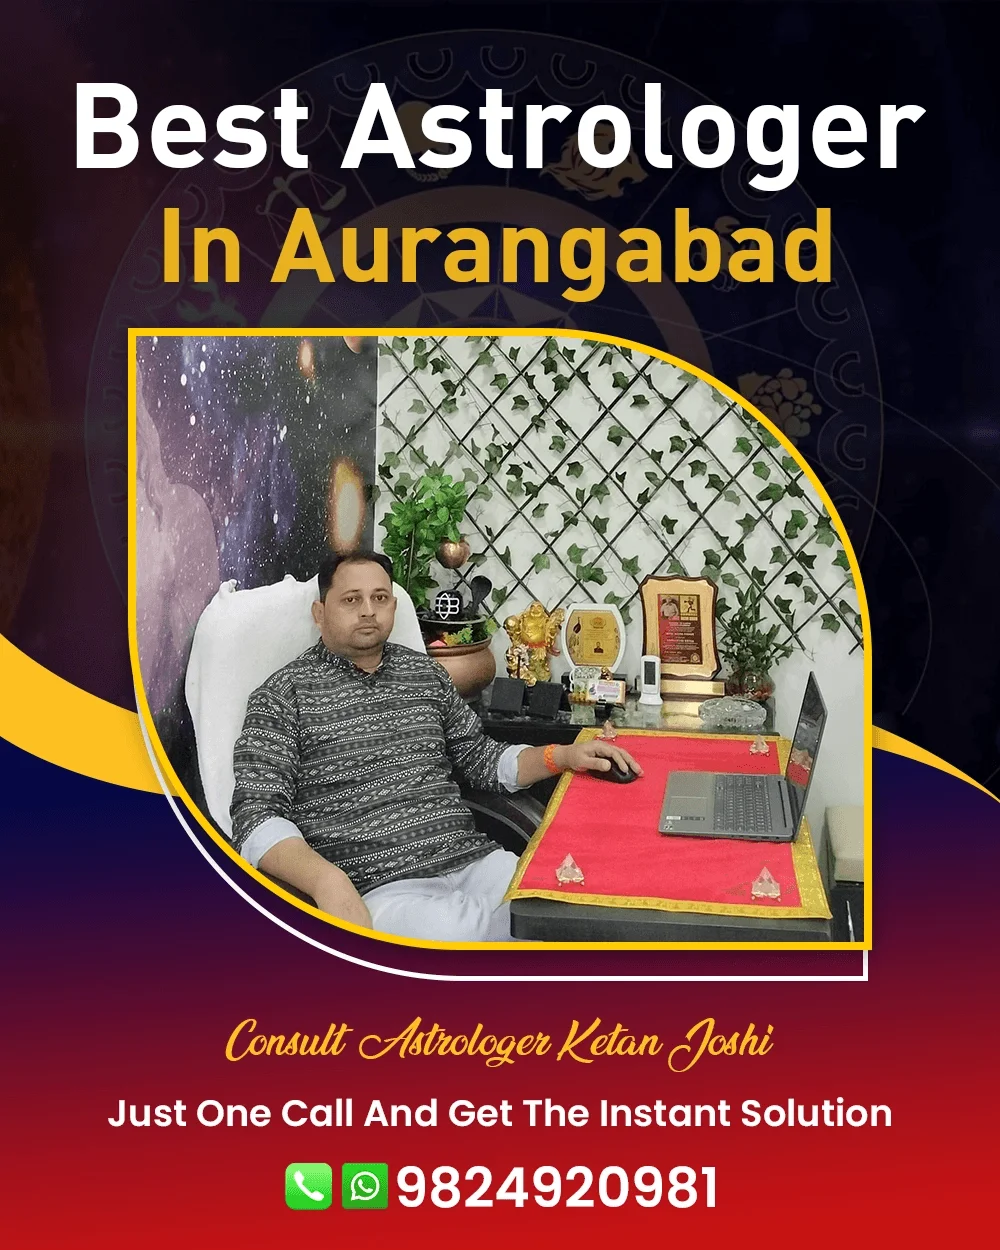 Best Astrologer In Aurangabad